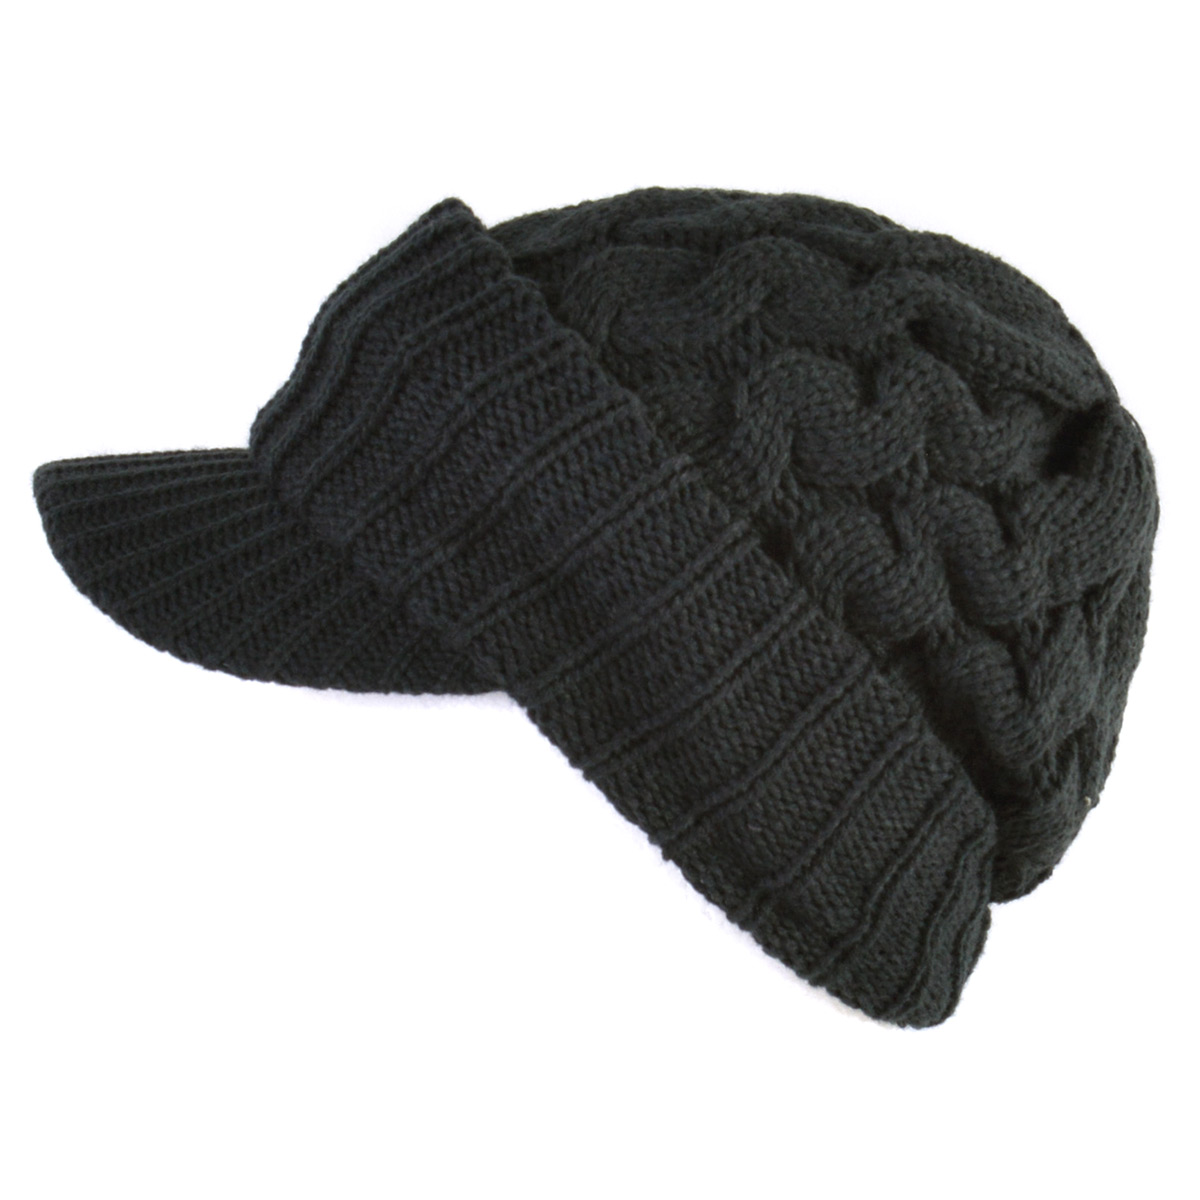 つば付きニット帽 つば付ニット帽 ニットキャップ 帽子 メンズ レディース 秋冬 冬用 | ジープ ケーブル ニット キャスケット